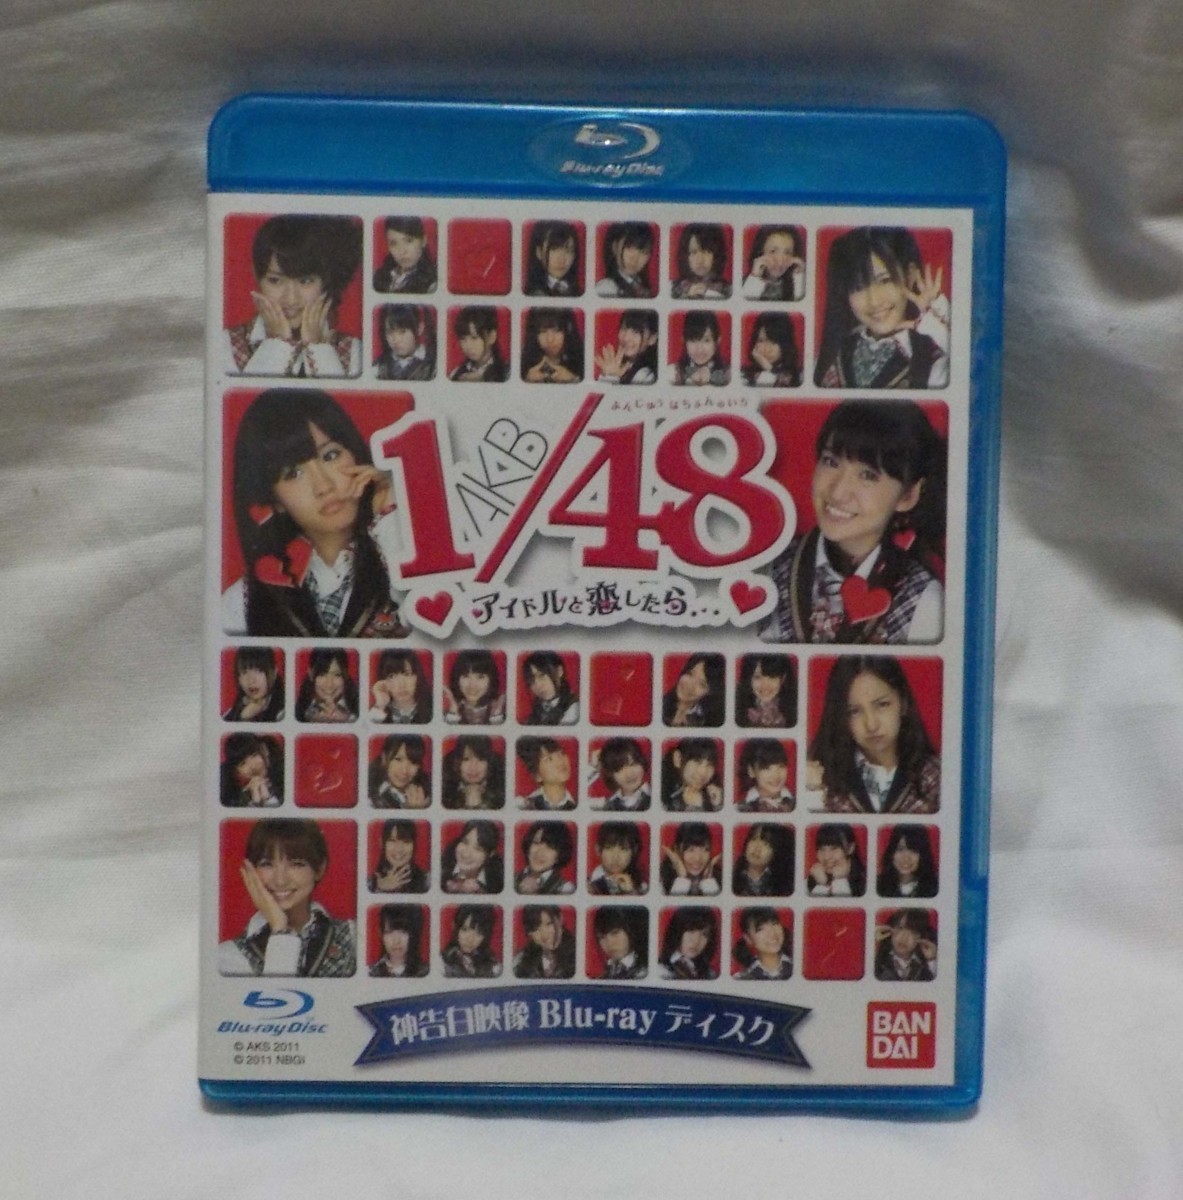 ☆ Blu -Ray Disc ☆ Akb48 1/48, если вы влюбитесь в идолов ... ☆ TA91